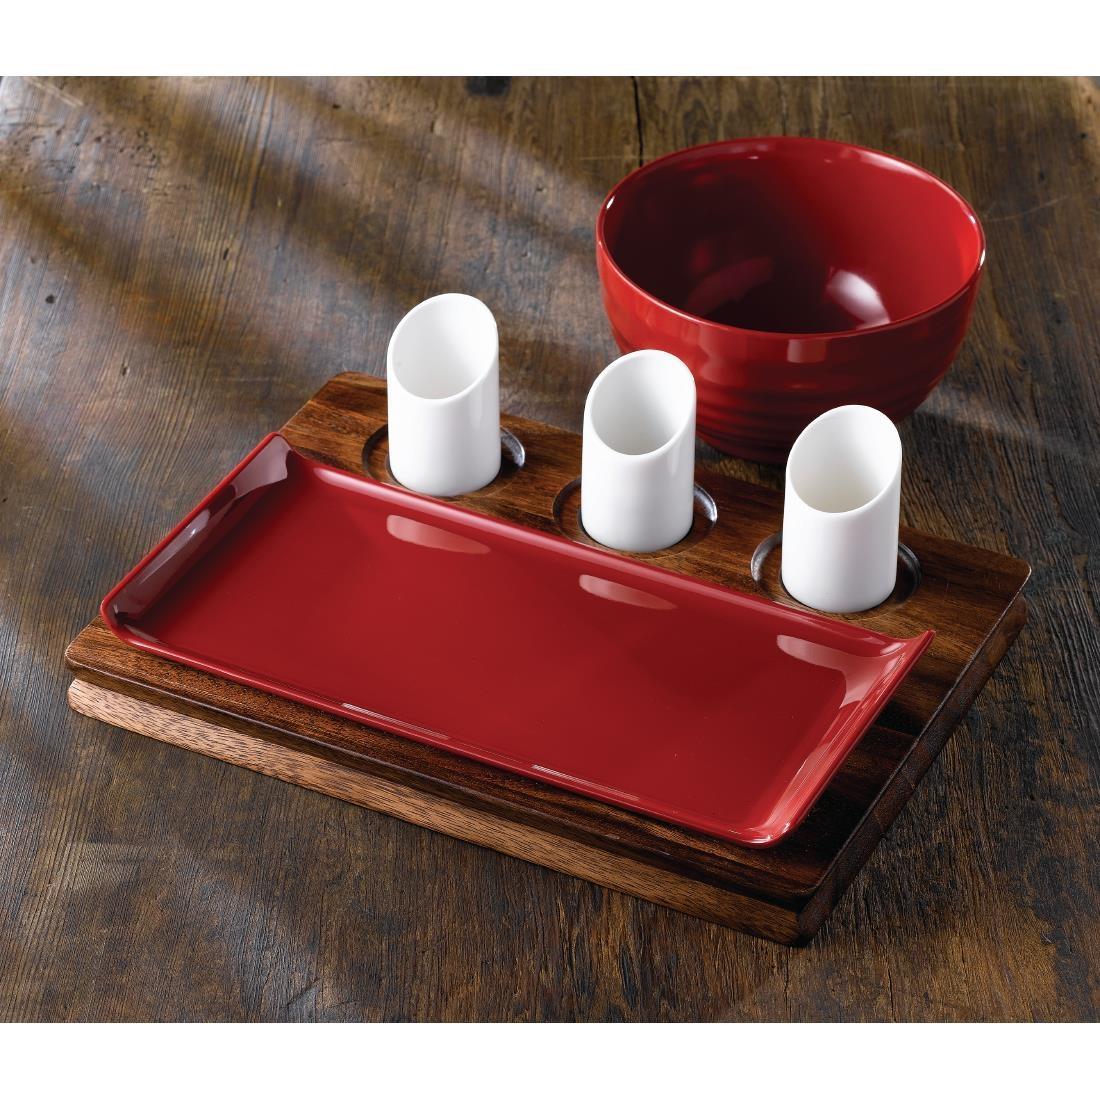 Art de Cuisine Red Glaze Ripple Bowls Small (Pack of 6) - GF707  - 2